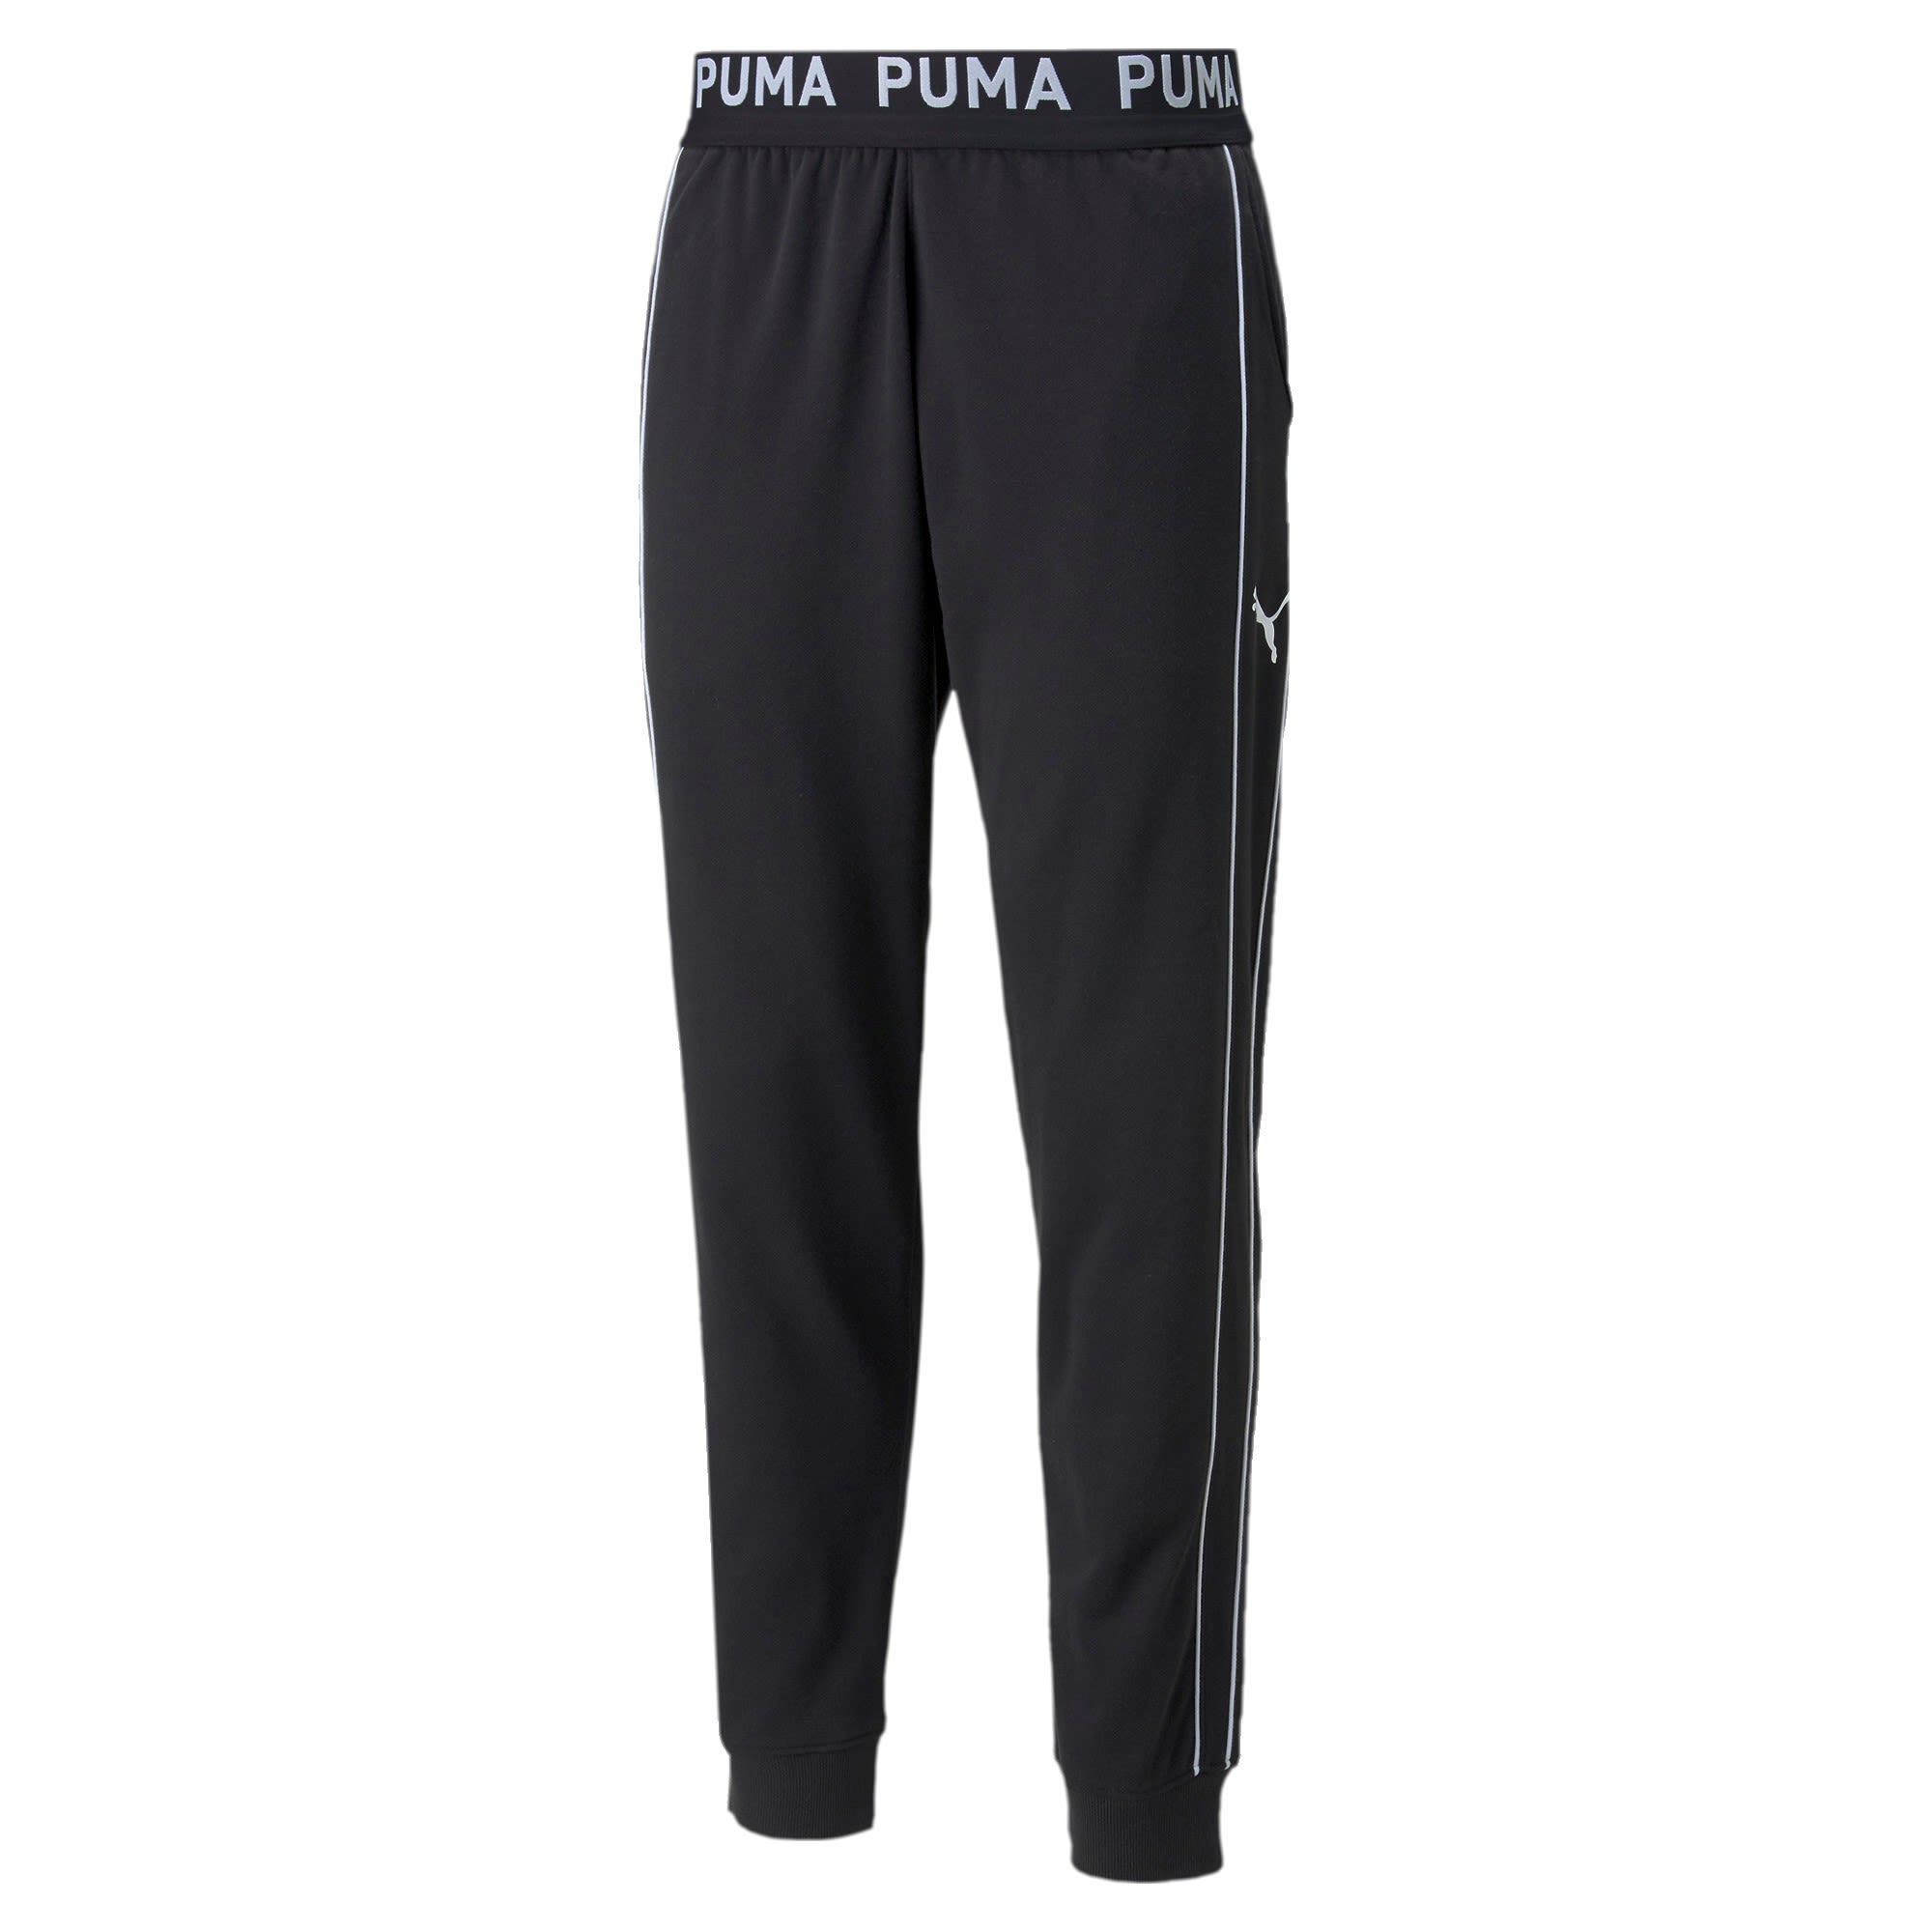 Puma Train Knit Jogger Schwarz- Male Softshellhosen- Grsse S - Farbe Puma Black